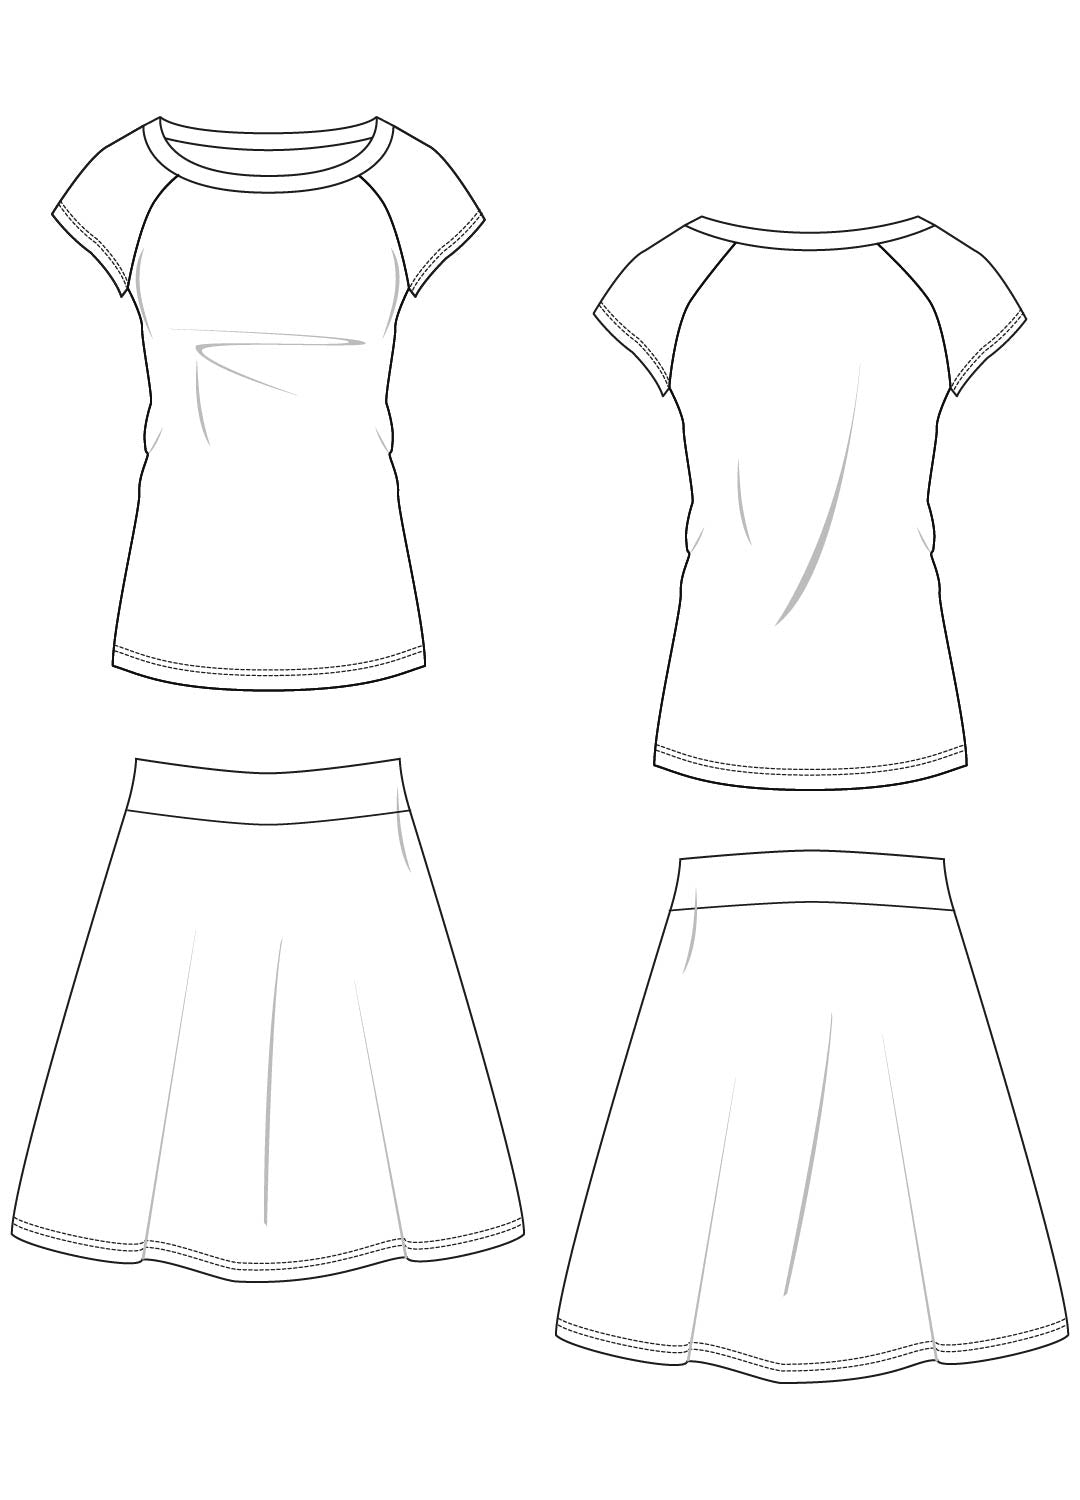 MONA - Top and skirt